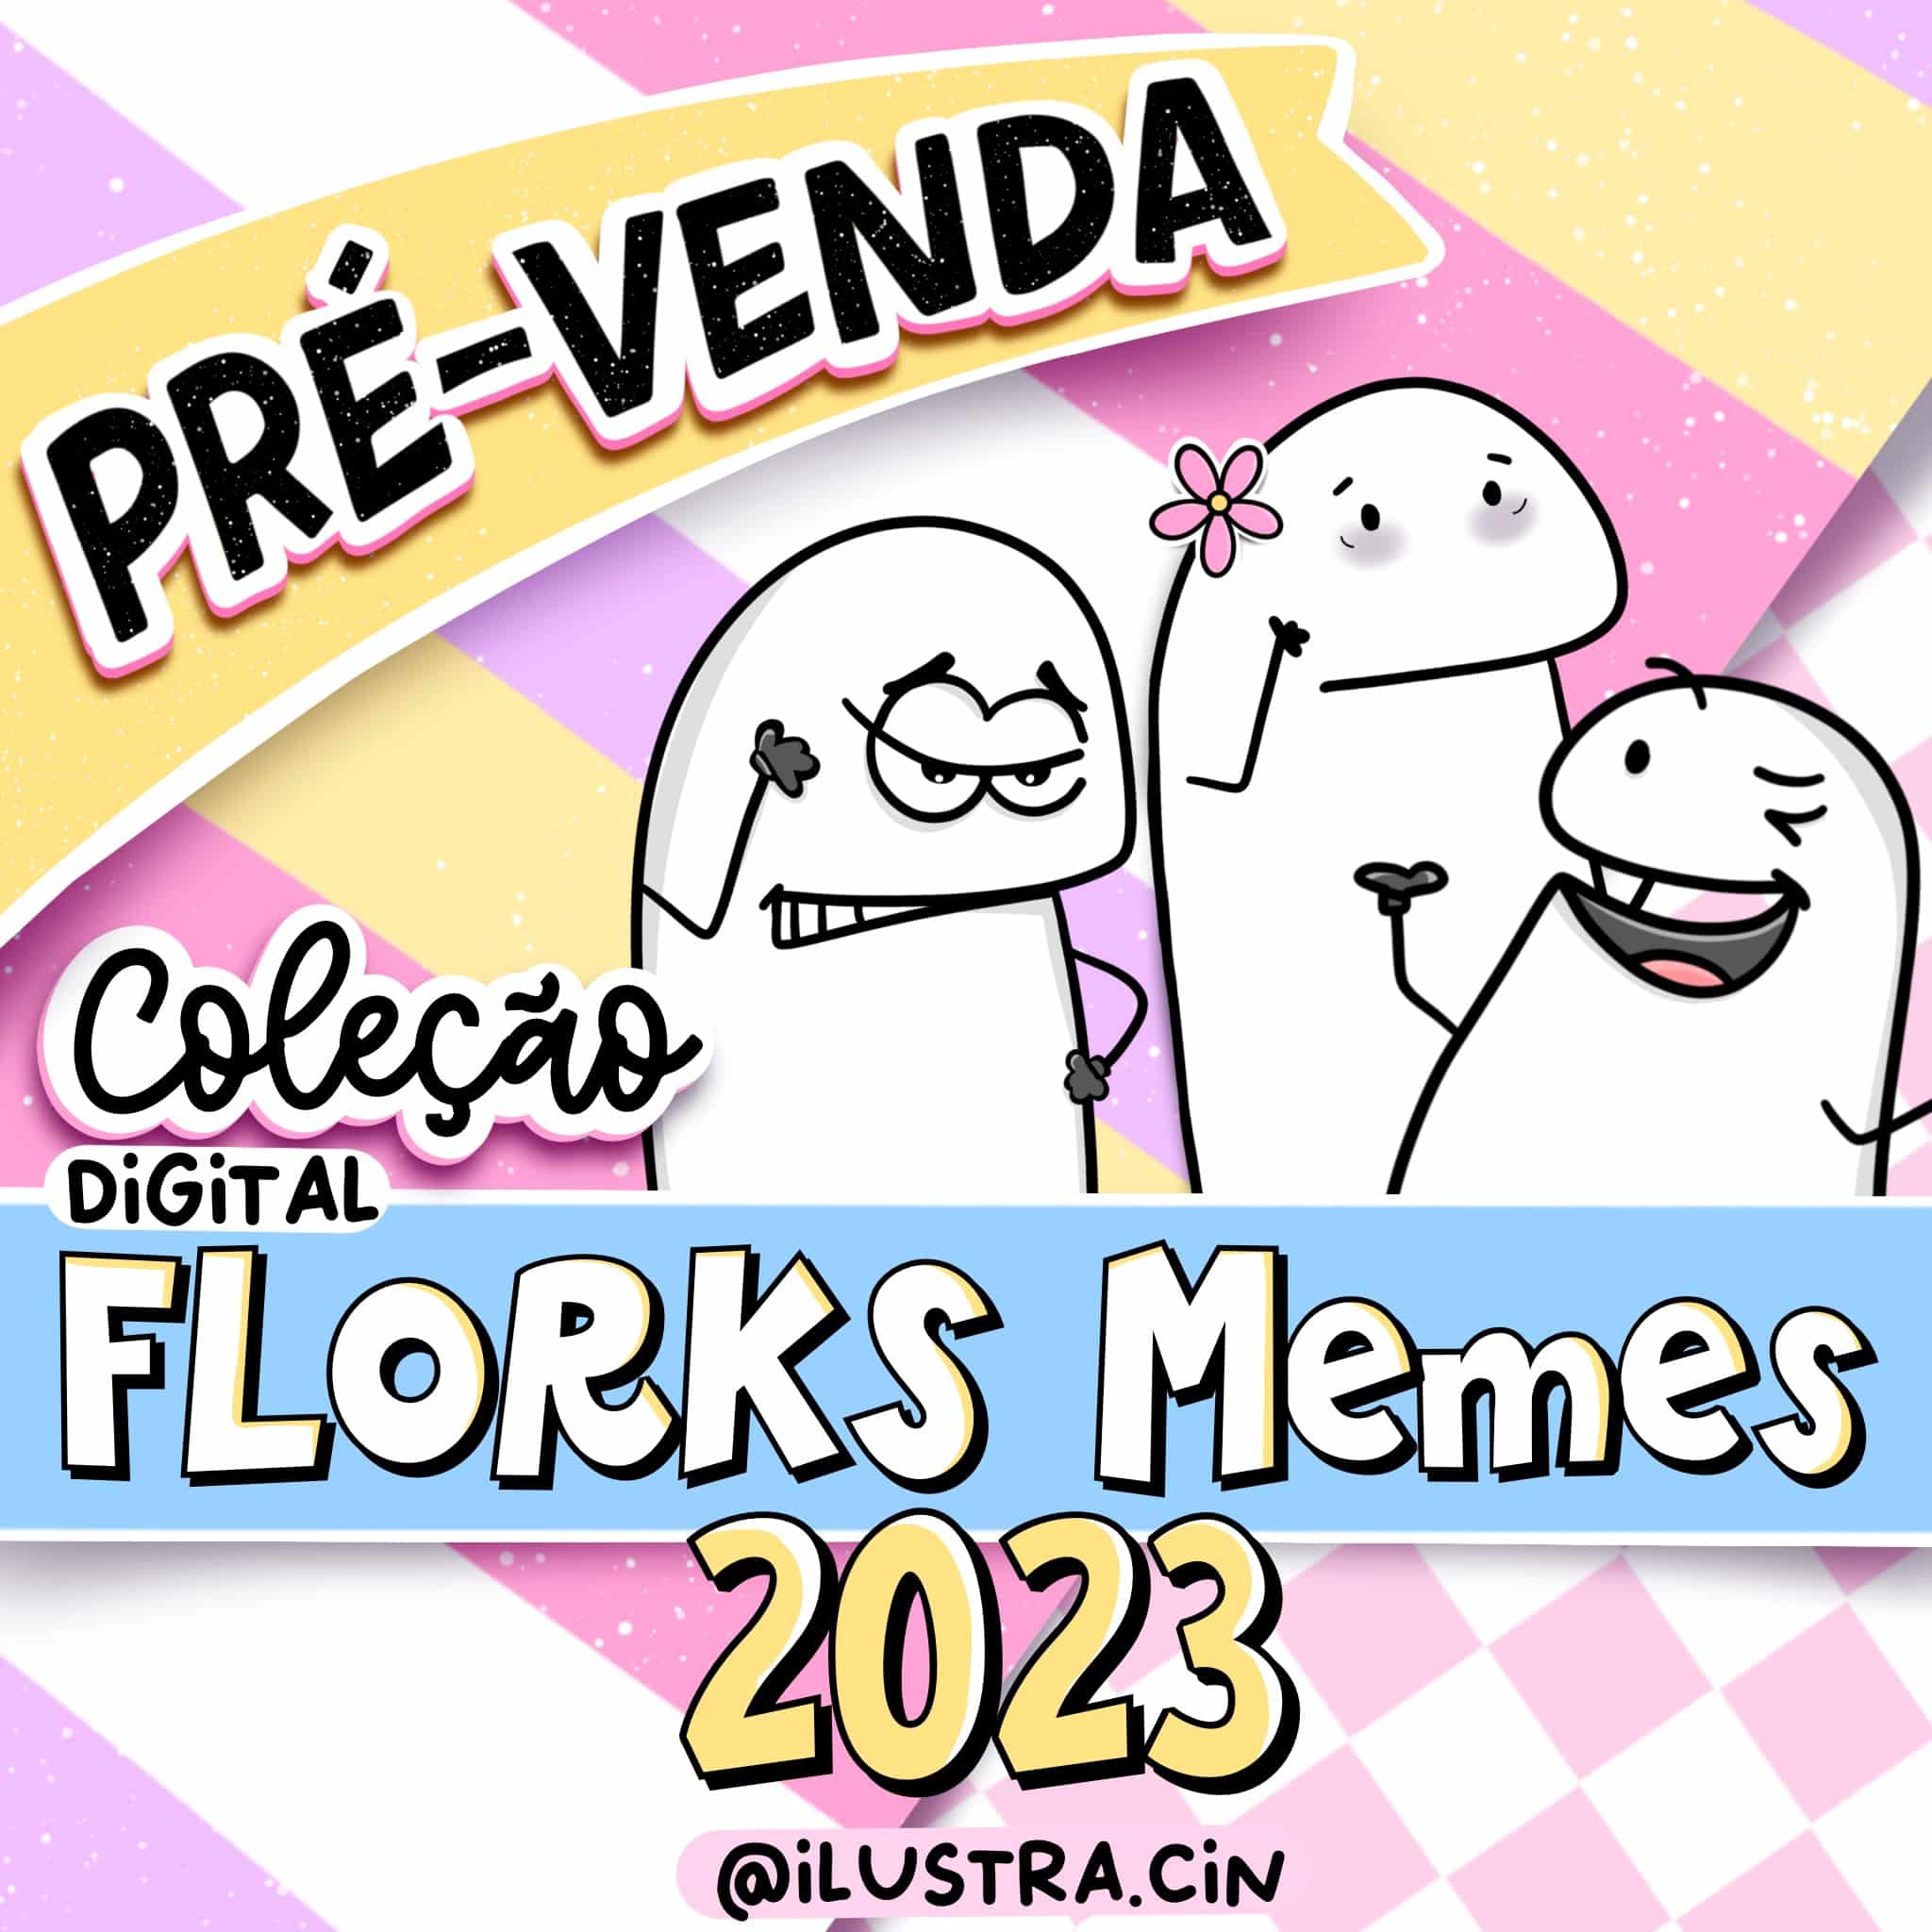 Kit Digital FLORKS MEMES 2023 – Ilustra.Cin